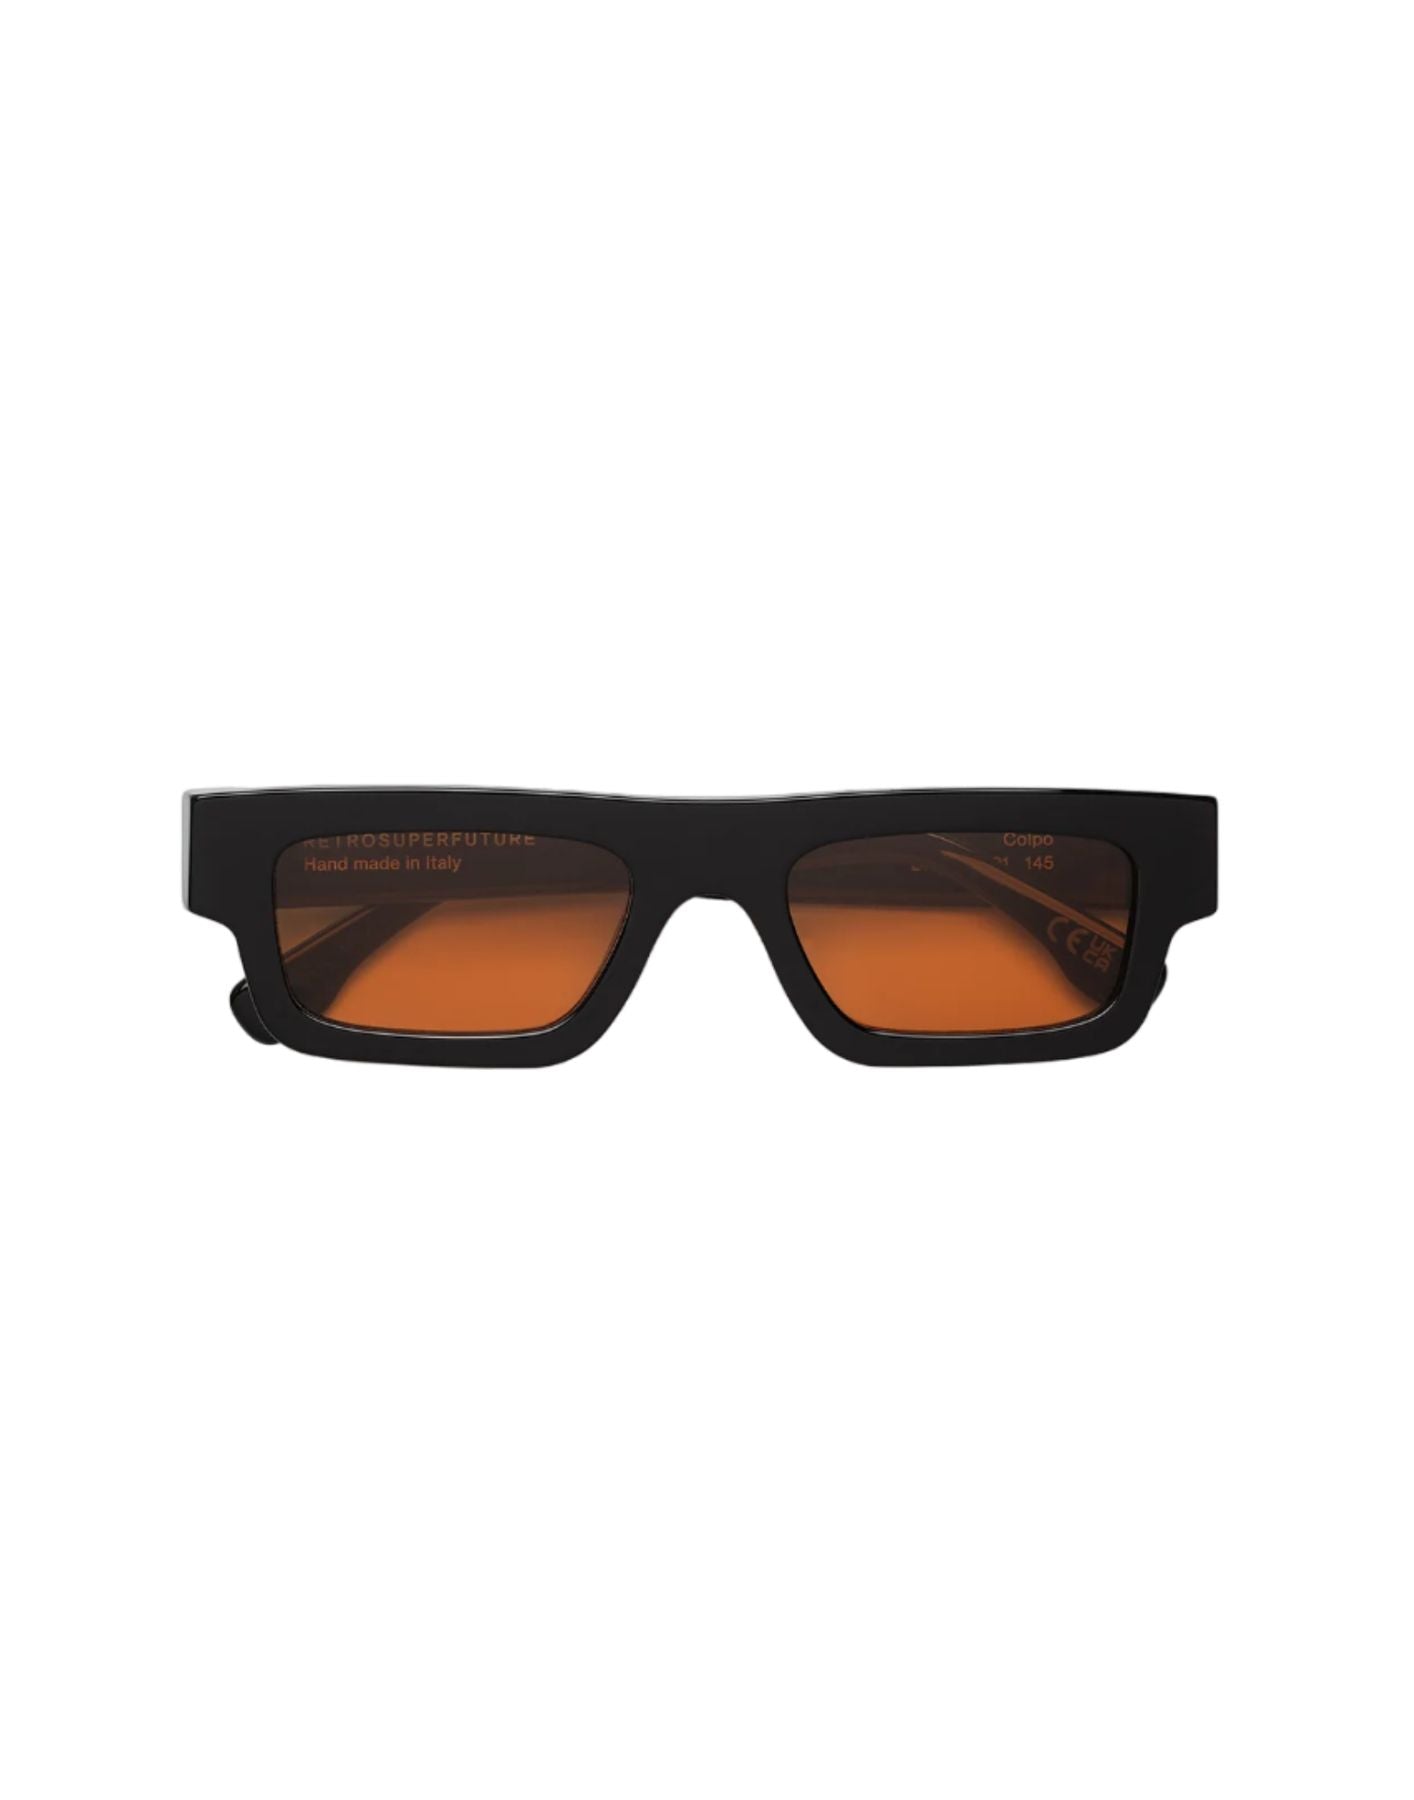 Sunglasses unisex COLPO FANTOME 061 Retrosuperfuture